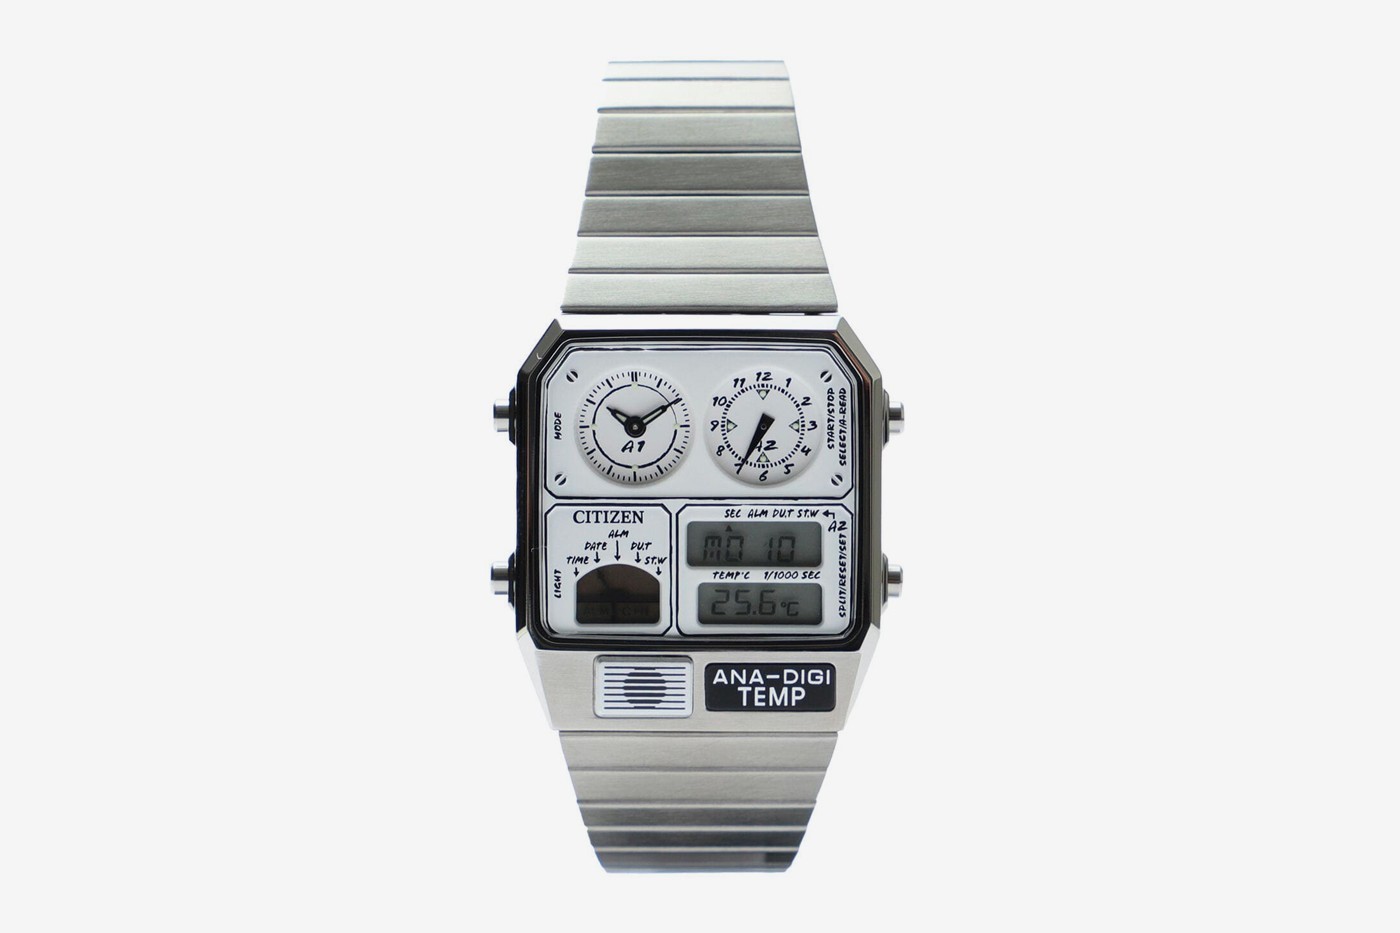 BEAMS × Citizen 联乘表款ANA-DIGI TEMP 最新设计发布- 手表- 瘾潮流 